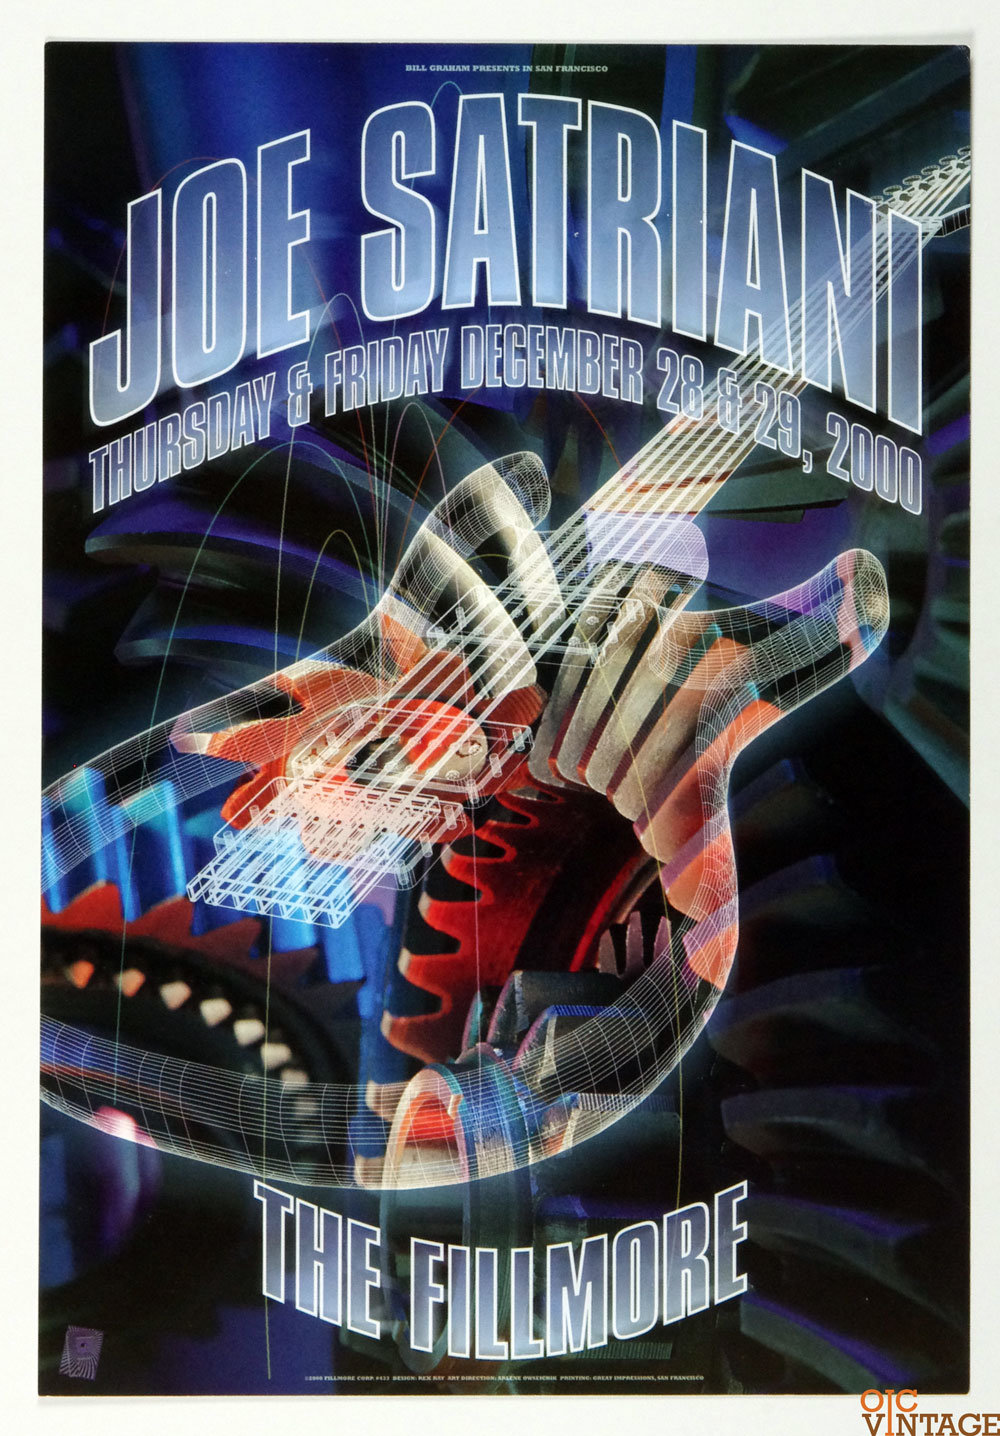 Joe Satriani Poster 2000 Dec 28 New Fillmore San Francisco